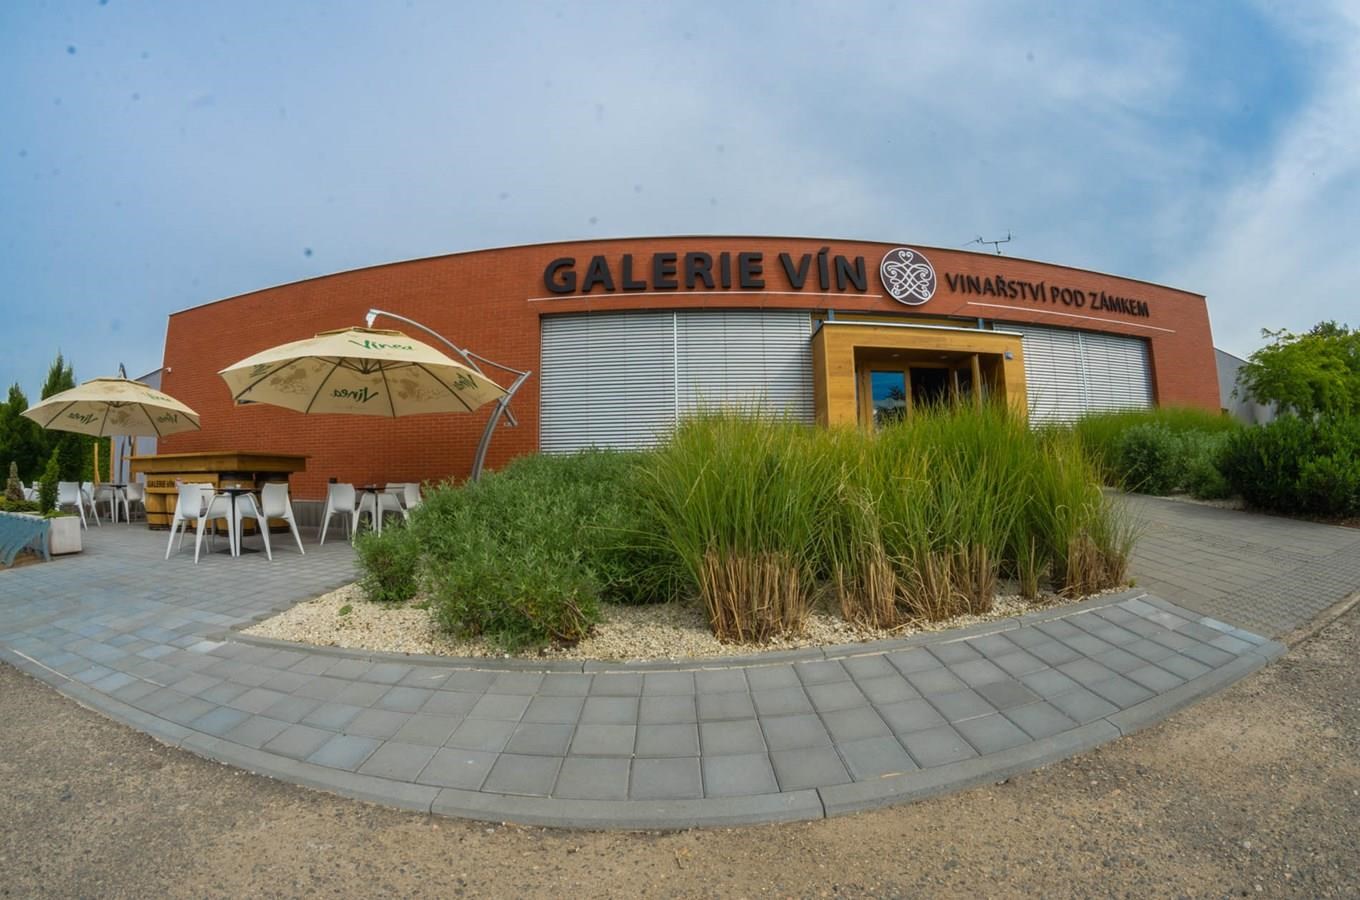 Galerie vín - Vinařství Pod Zámkem